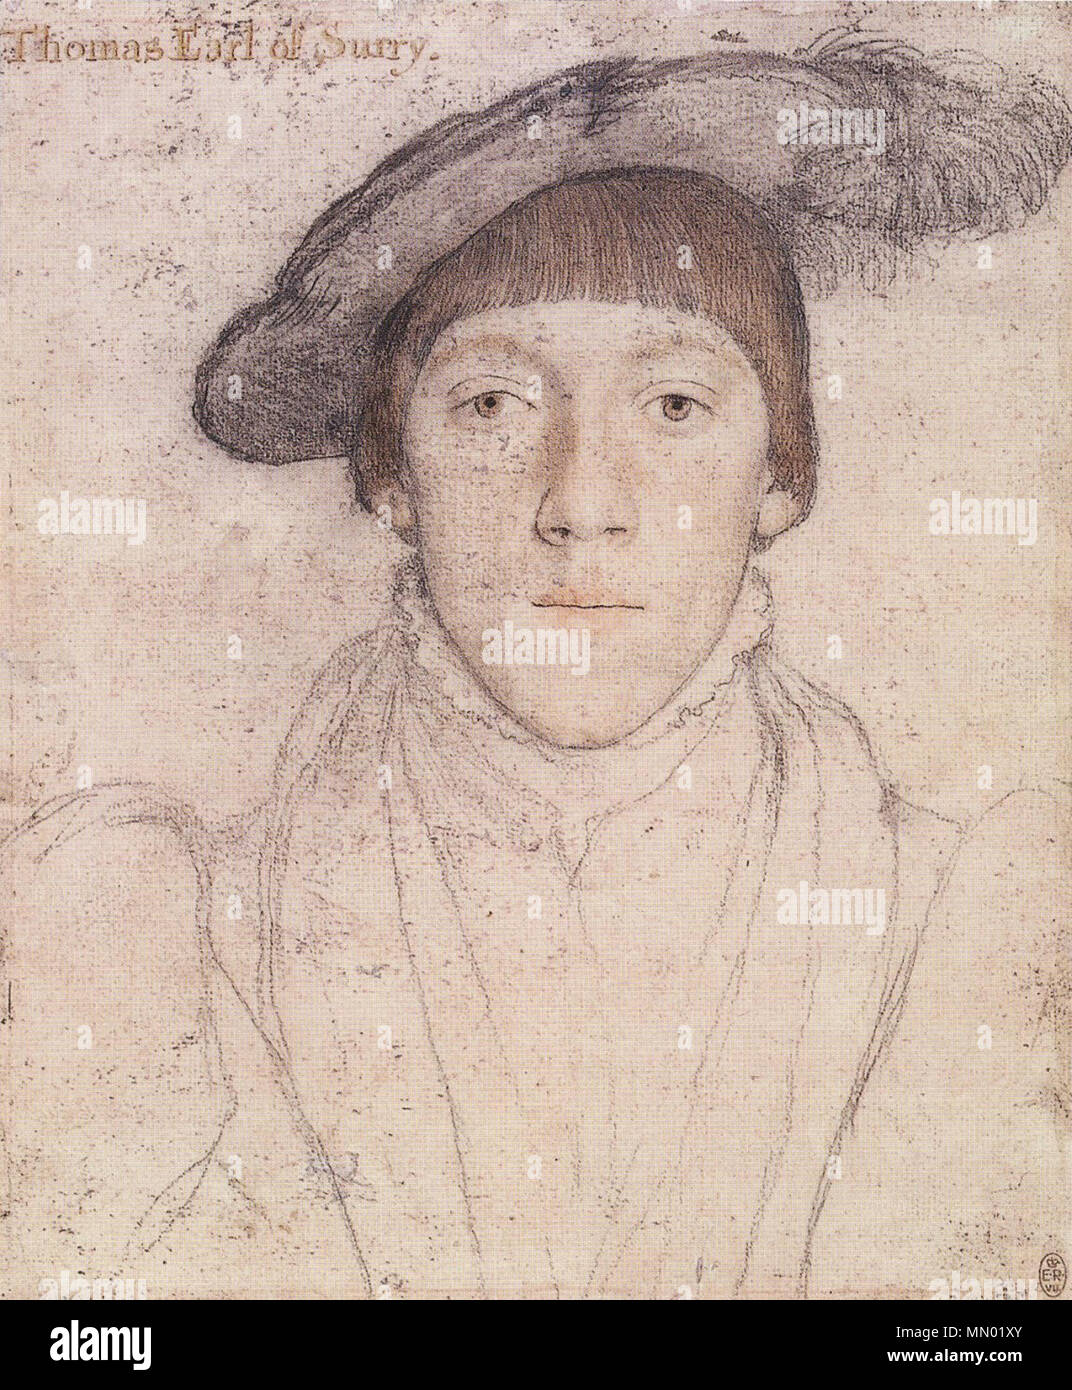 . Englisch: Portrait von Henry Howard, Earl of Surrey. Schwarze und farbige Kreide, Feder und Tusche, Aquarell auf Rosa - grundiert Papier, 25,1 × 20,1 cm, Royal Collection, Windsor Castle. Dies ist eine Zeichnung von Henry Howard, Earl of Surrey (1517 - 47). Die Inschrift "Thomas Graf von Surry, später hinzugefügt, ist falsch. Howard war ein Dichter und Kunstliebhaber, die Sitzung für Porträts: eine andere Zeichnung von ihm von Holbein überlebt, als auch ein Öl portrait. Howard wurde im Jahre 1547 ausgeführt, der fälschlicherweise mit dem königlichen Wappen von England verurteilt. Die Arme sind in einem Porträt von ihm von William Powell Frith gesehen. . Ca. 153 Stockfoto